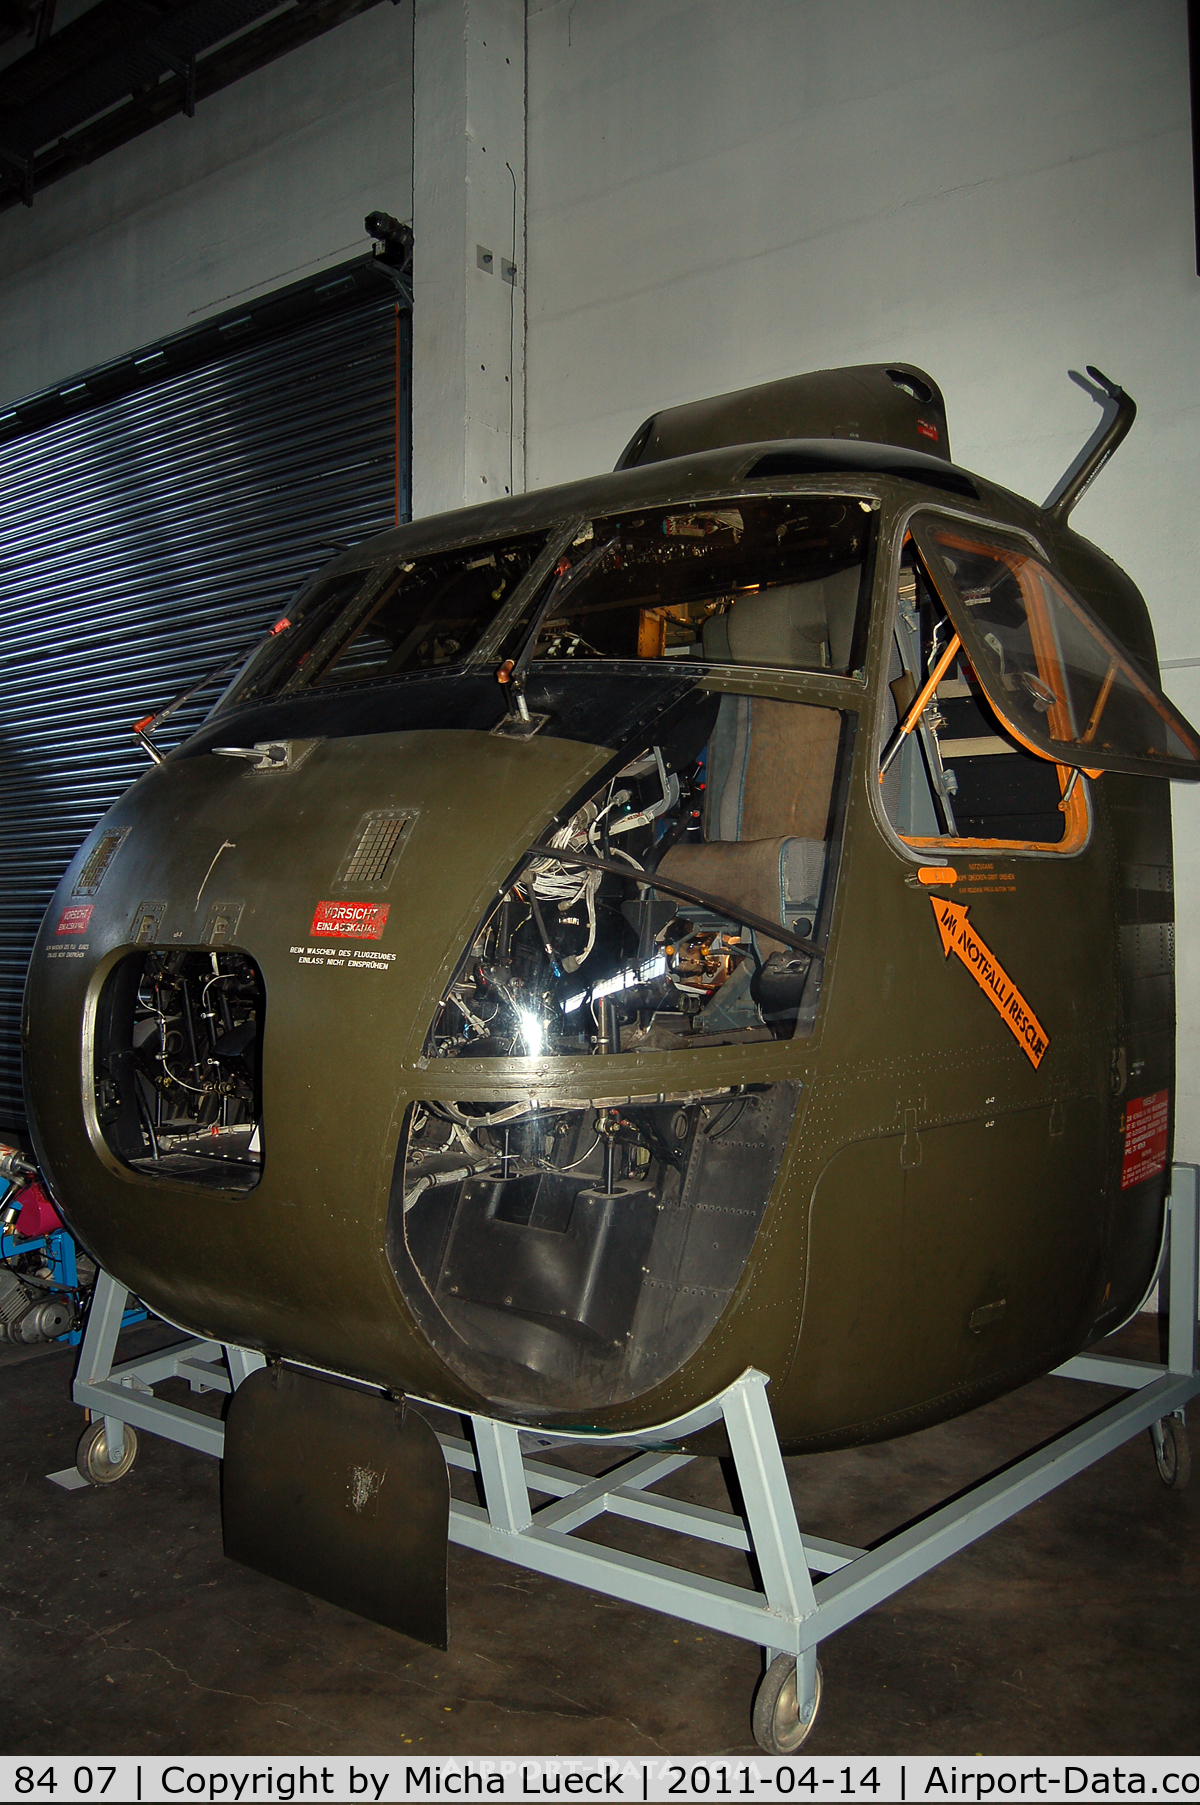 84 07, Sikorsky (VFW-Fokker) CH-53G C/N V65-005, Museum für Luftfahrt und Technik, Wernigerode, Germany